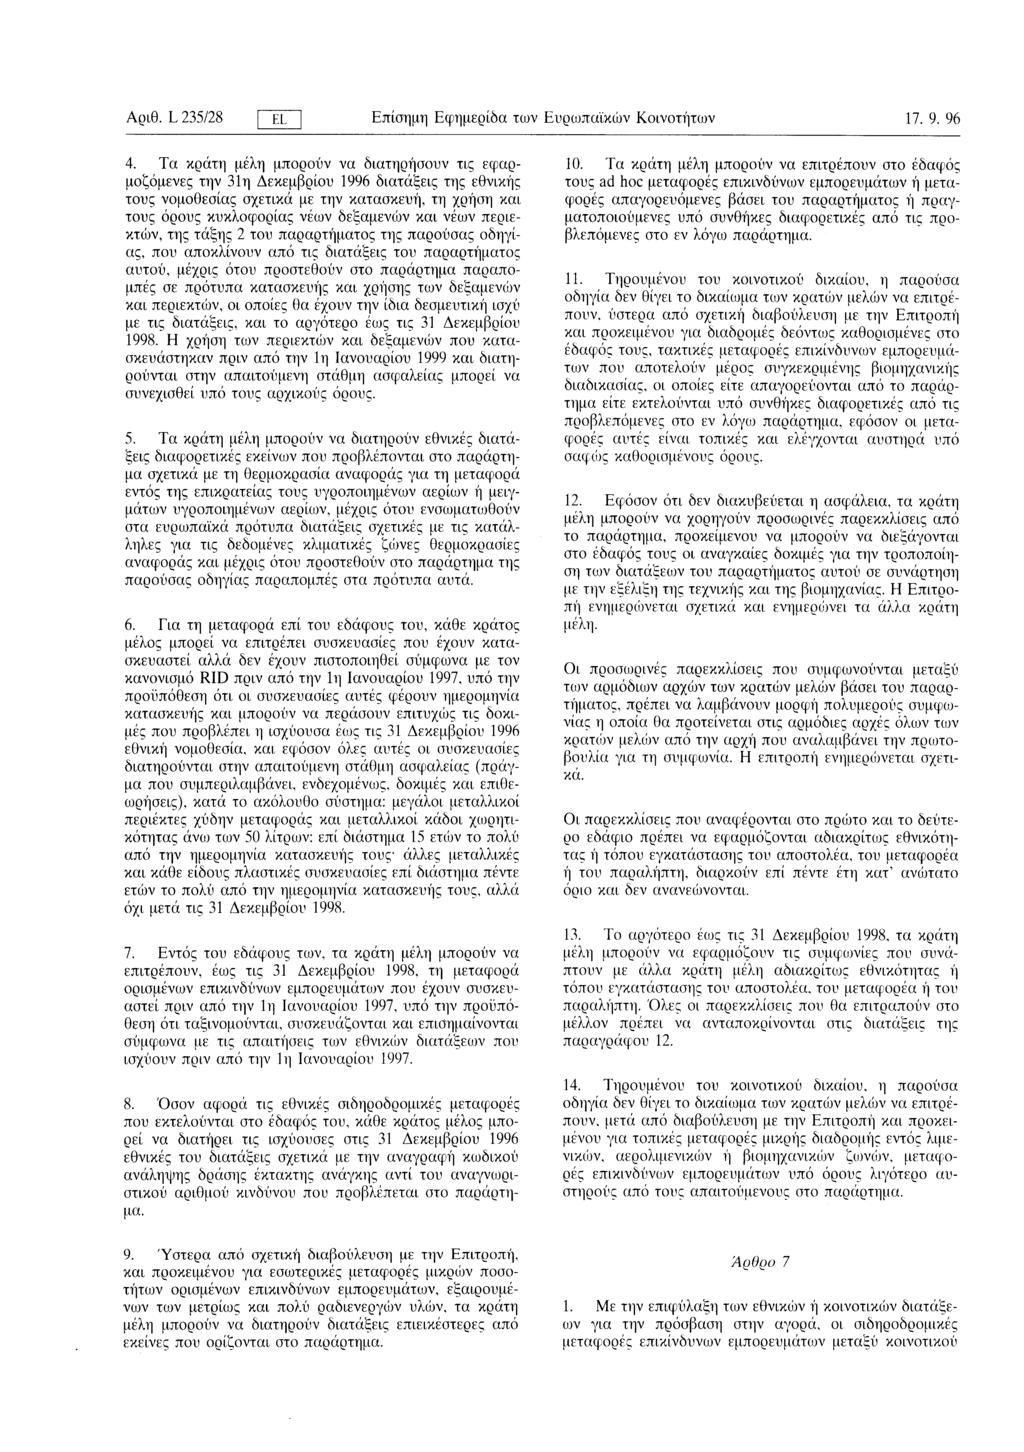 Αριθ L 235/28 ΓΕL Επίσημη Εφημερίδα των Ευρωπαϊκών Κοινοτήτων 17 9 96 4 Τα κράτη μελη μπορούν να διατηρήσουν τις εφαρμοζόμενες την 31η Δεκεμβρίου 1996 διατάξεις της εθνικής τους νομοθεσίας σχετικά με